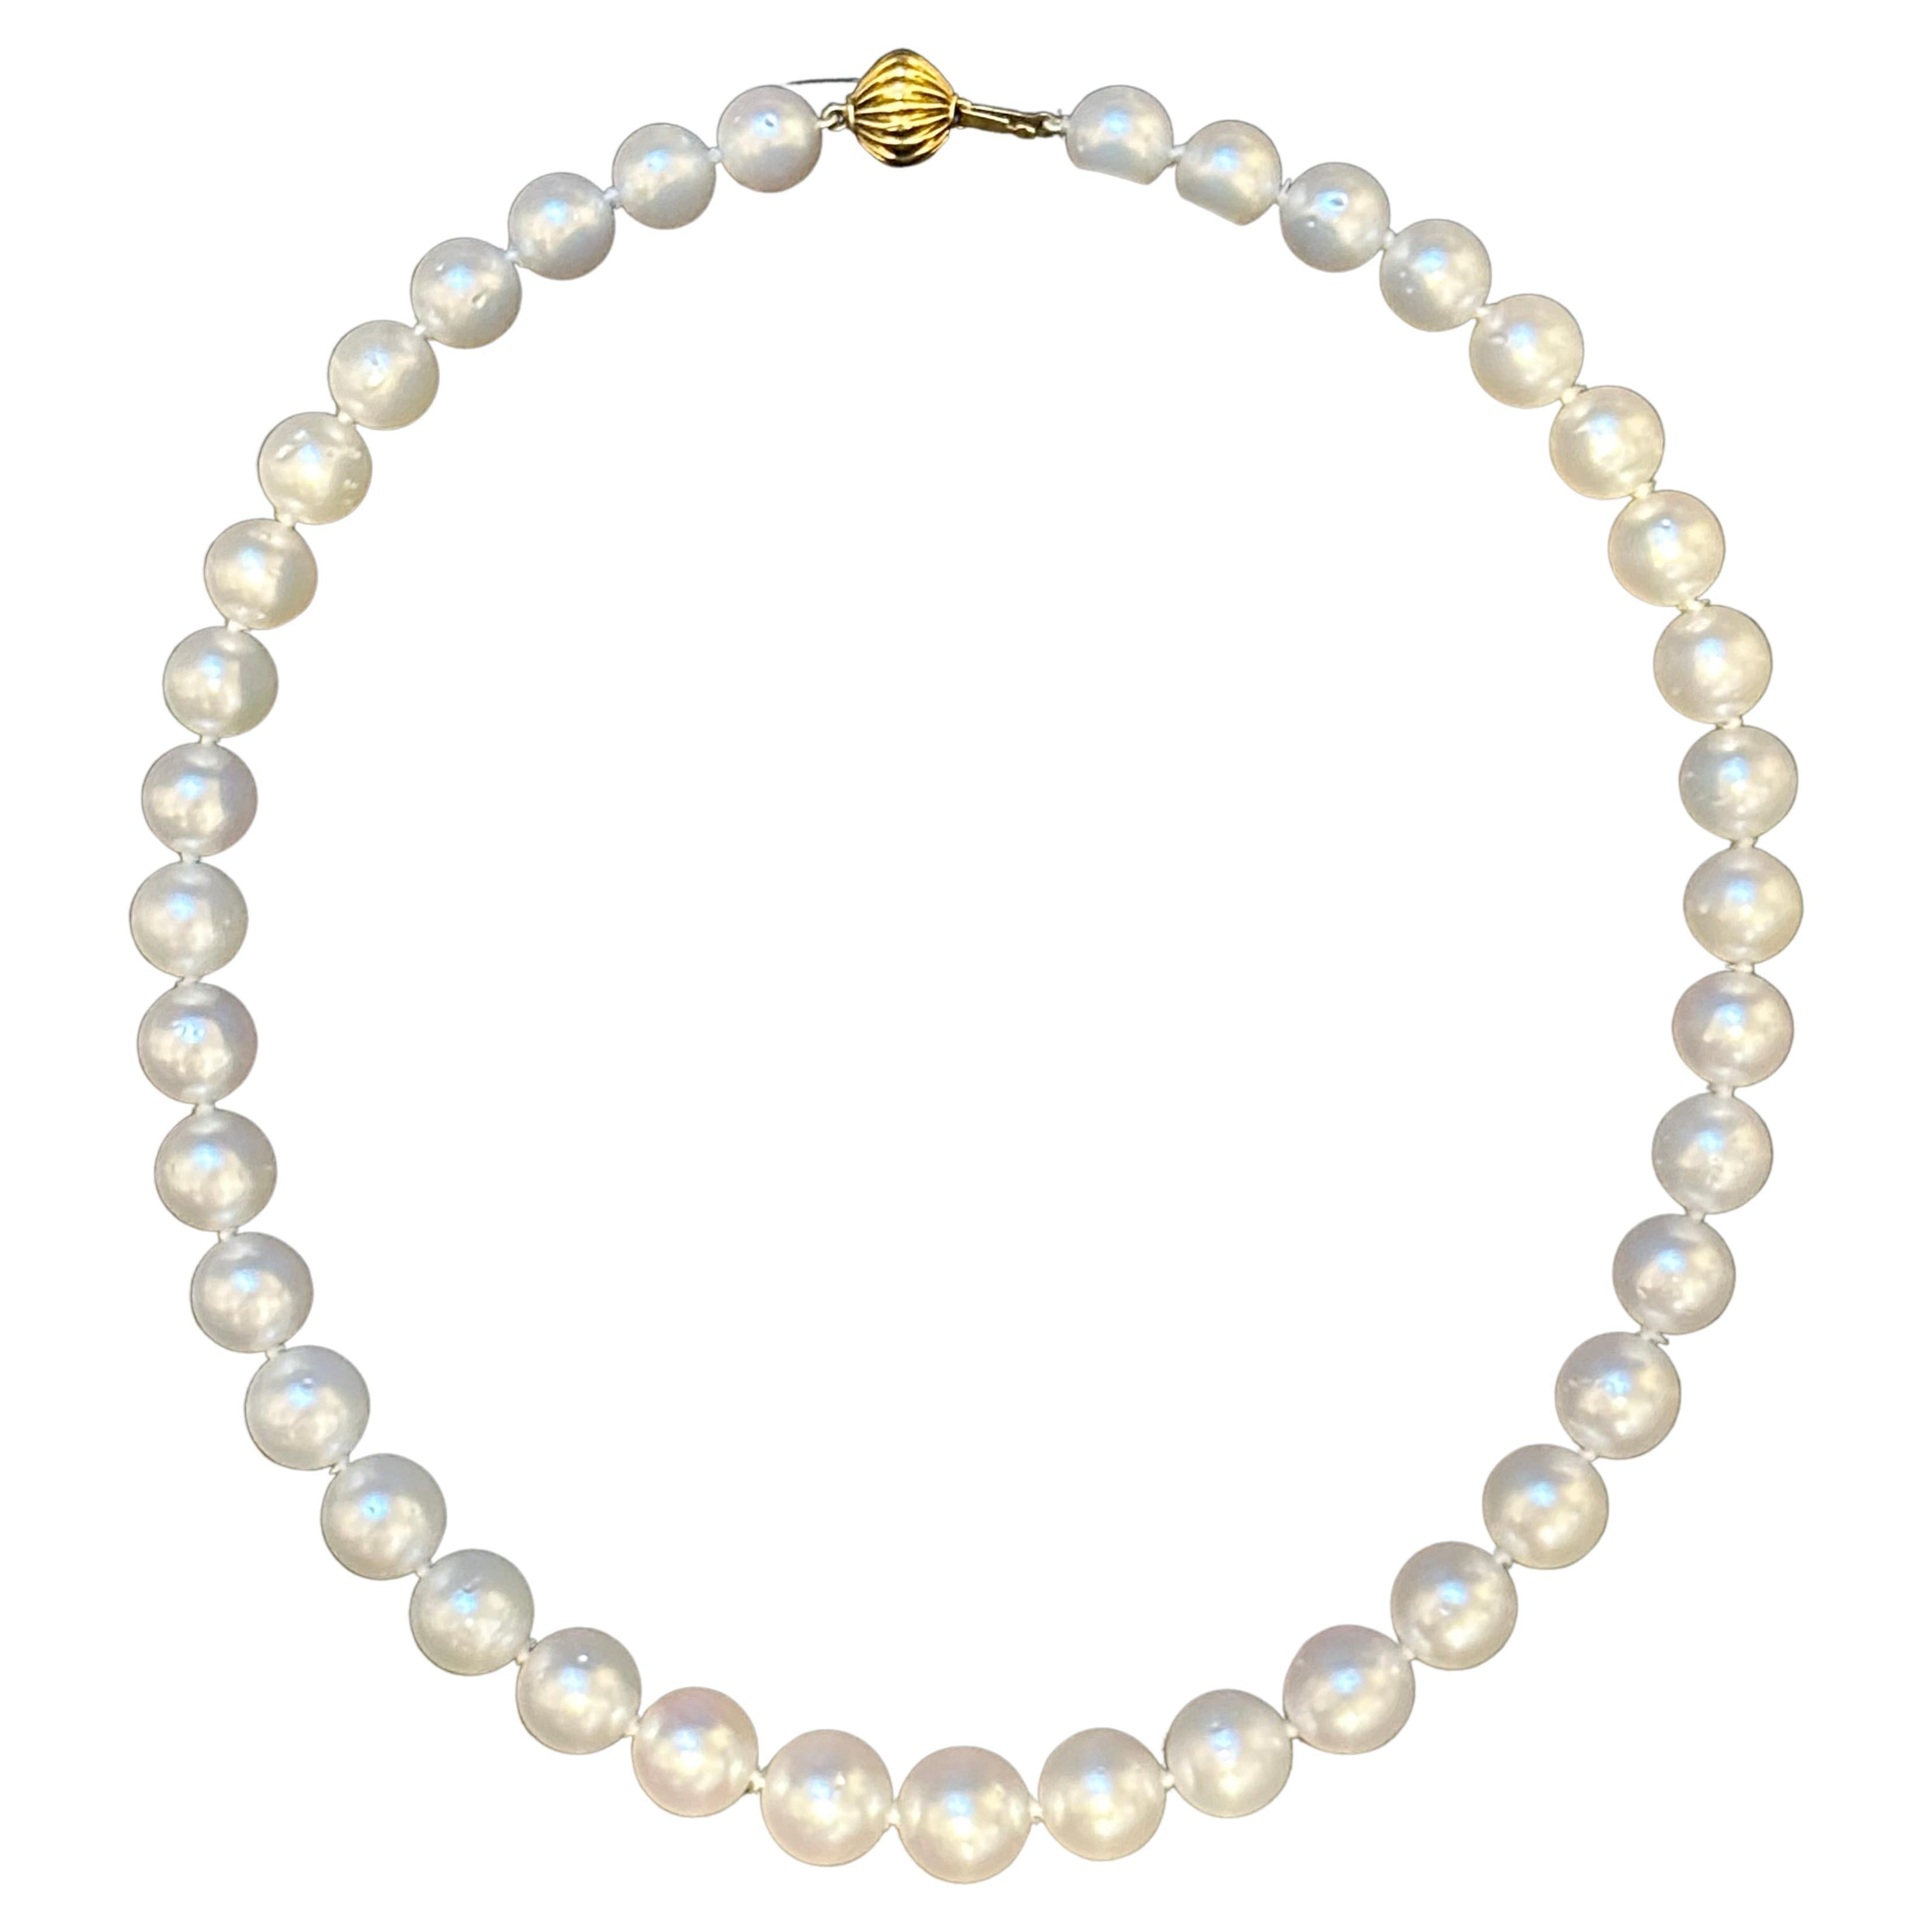 Ce collier de 16 pouces présente une collection de 39 perles blanches exquises des mers du Sud, d'une taille allant de 9 à 12 mm. Les perles sont magnifiquement complétées par un fermoir boule en or jaune blanc 14K, qui ajoute une touche d'élégance.